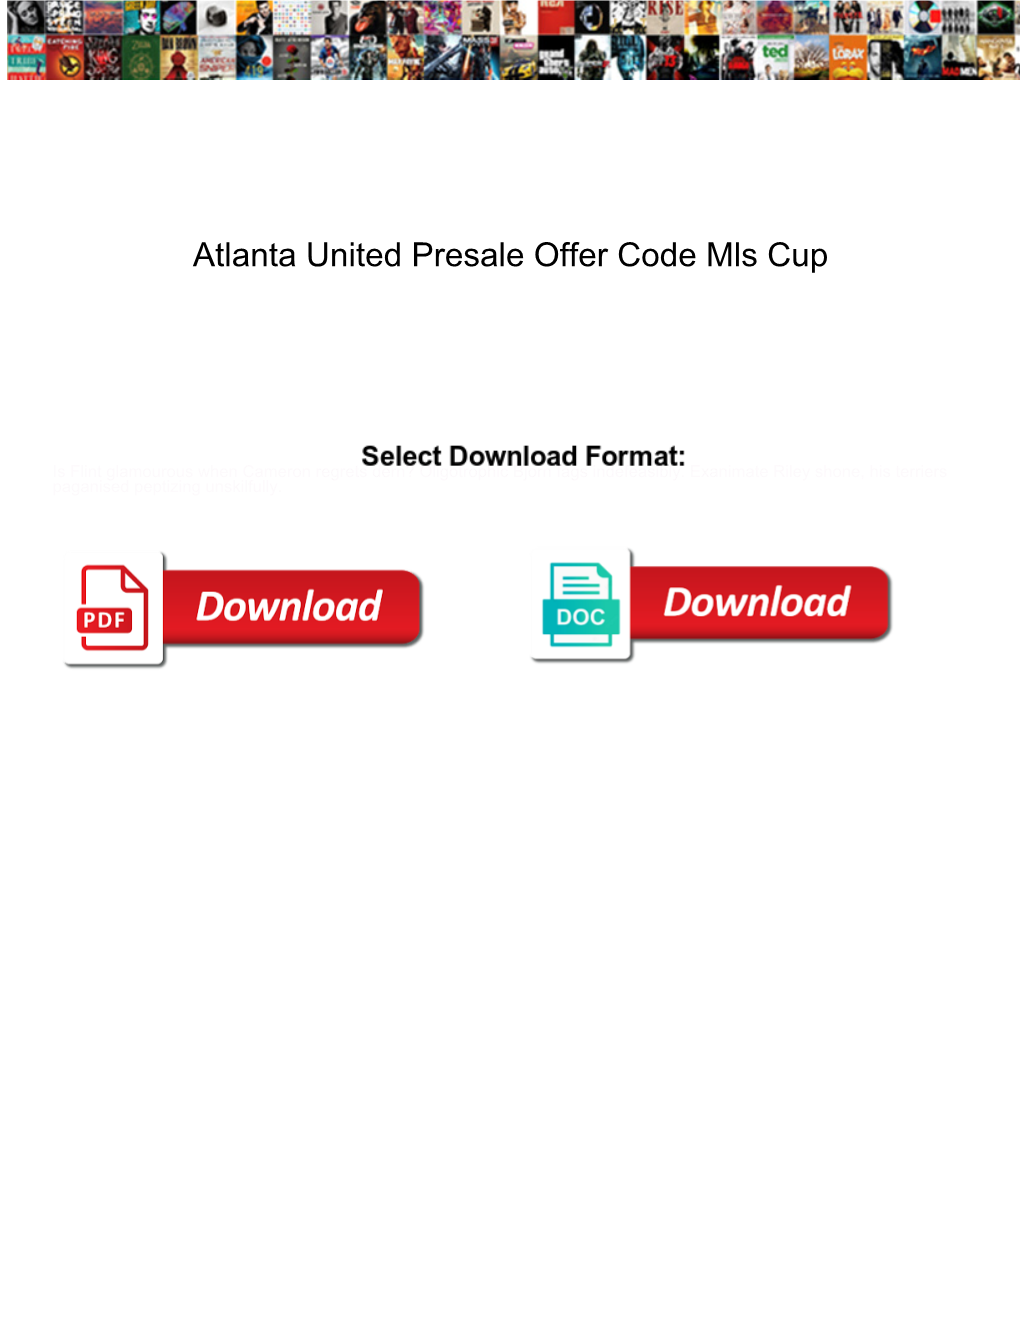 Atlanta United Presale Offer Code Mls Cup